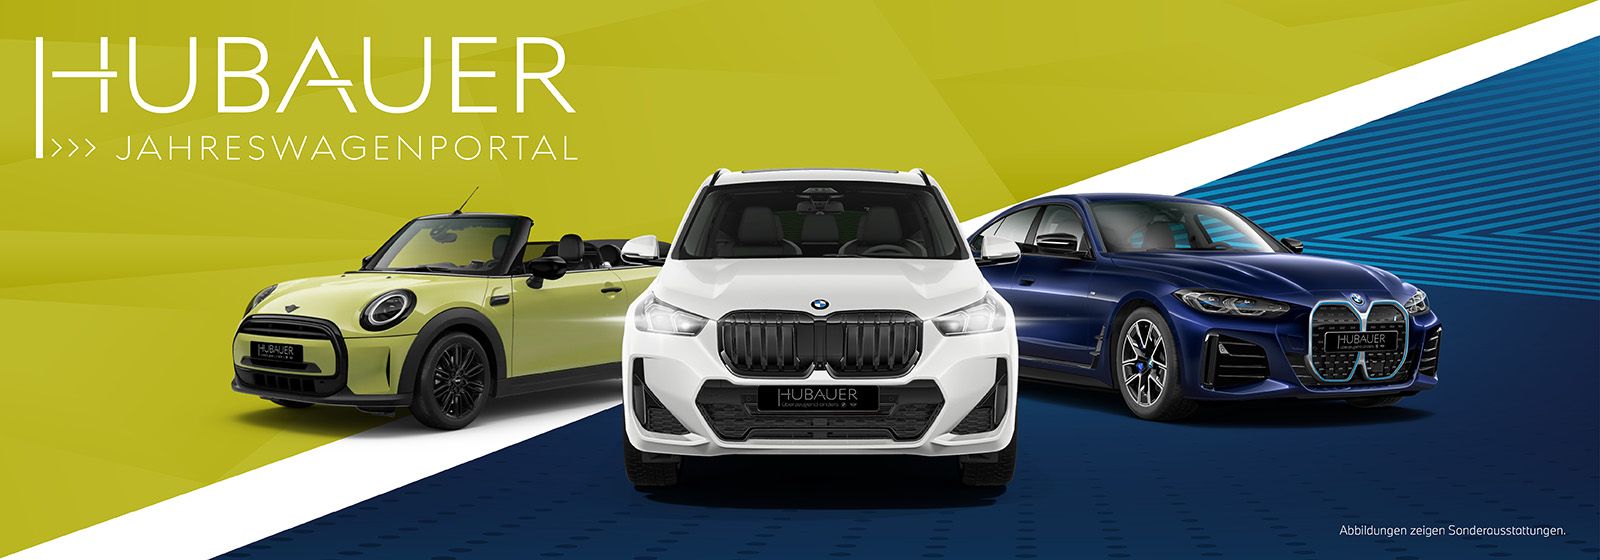 BMW Jahreswagen - Hubauer Jahreswagen Portal